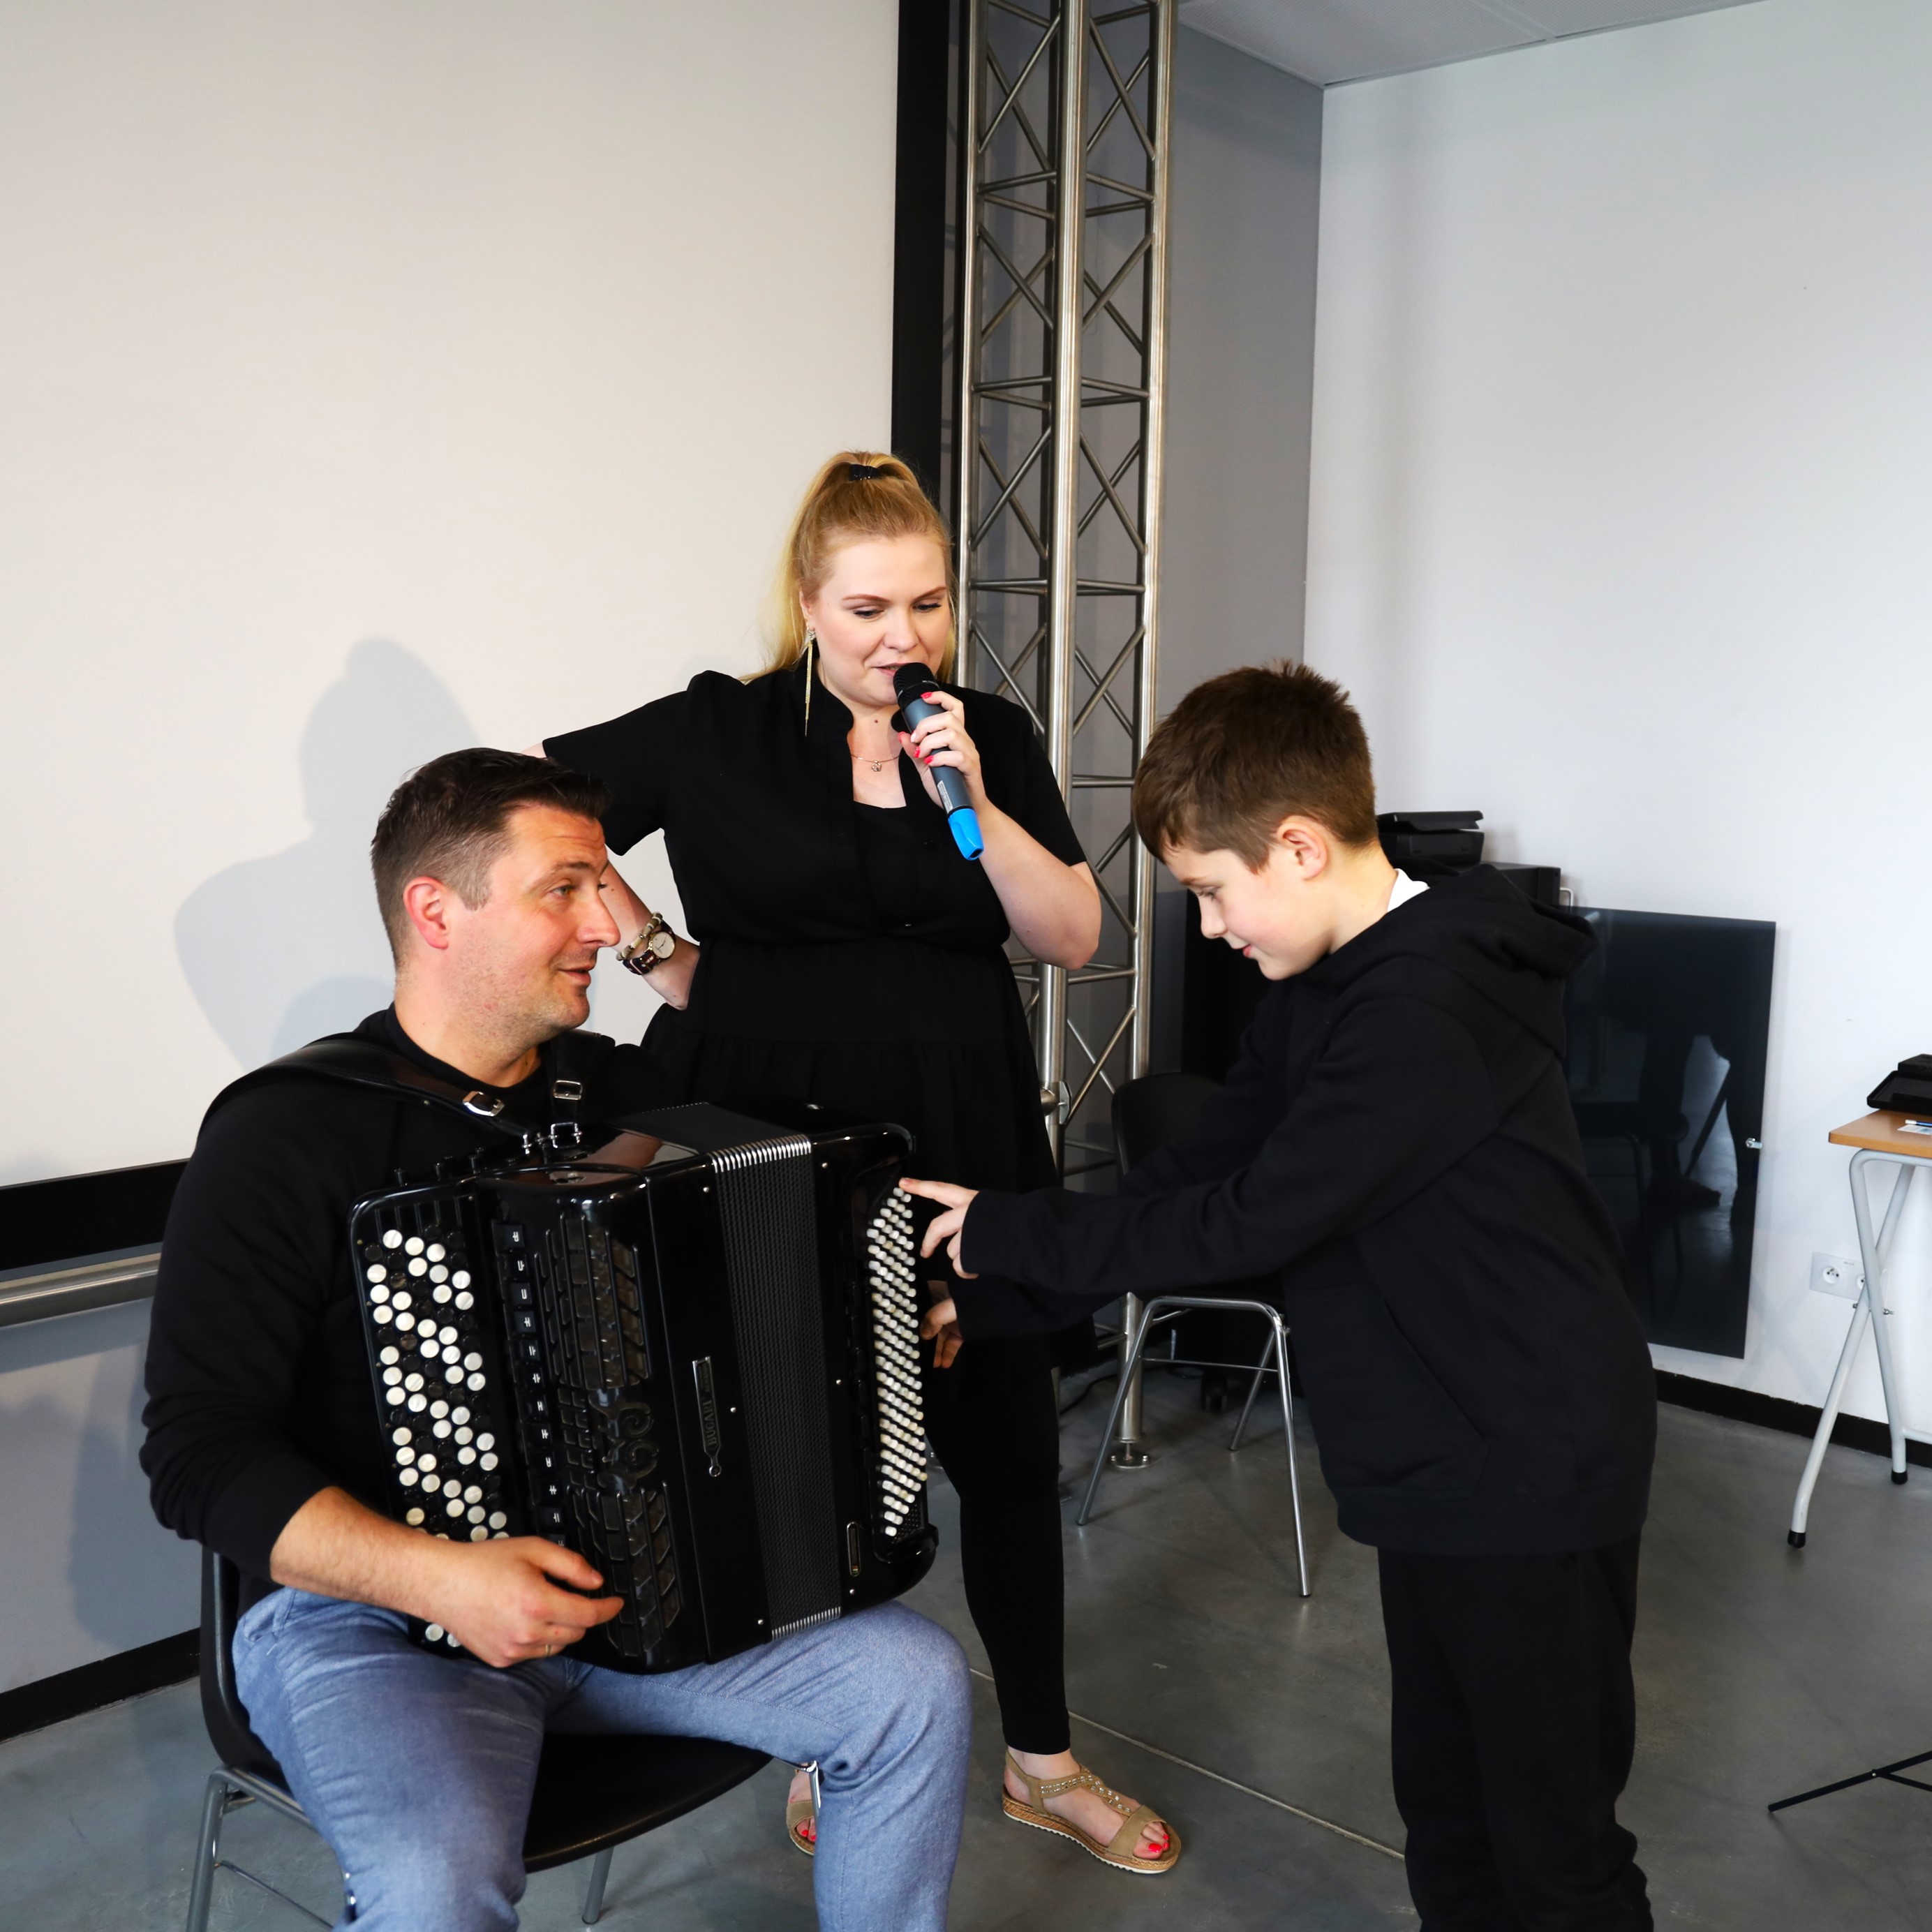 Na zdjęciu chłopiec dotyka akordeonu pana muzyka , prowadząca opowiada przez mikrofon o instrumencie podczas audycji muzycznych w budynku Starej Elektrowni 